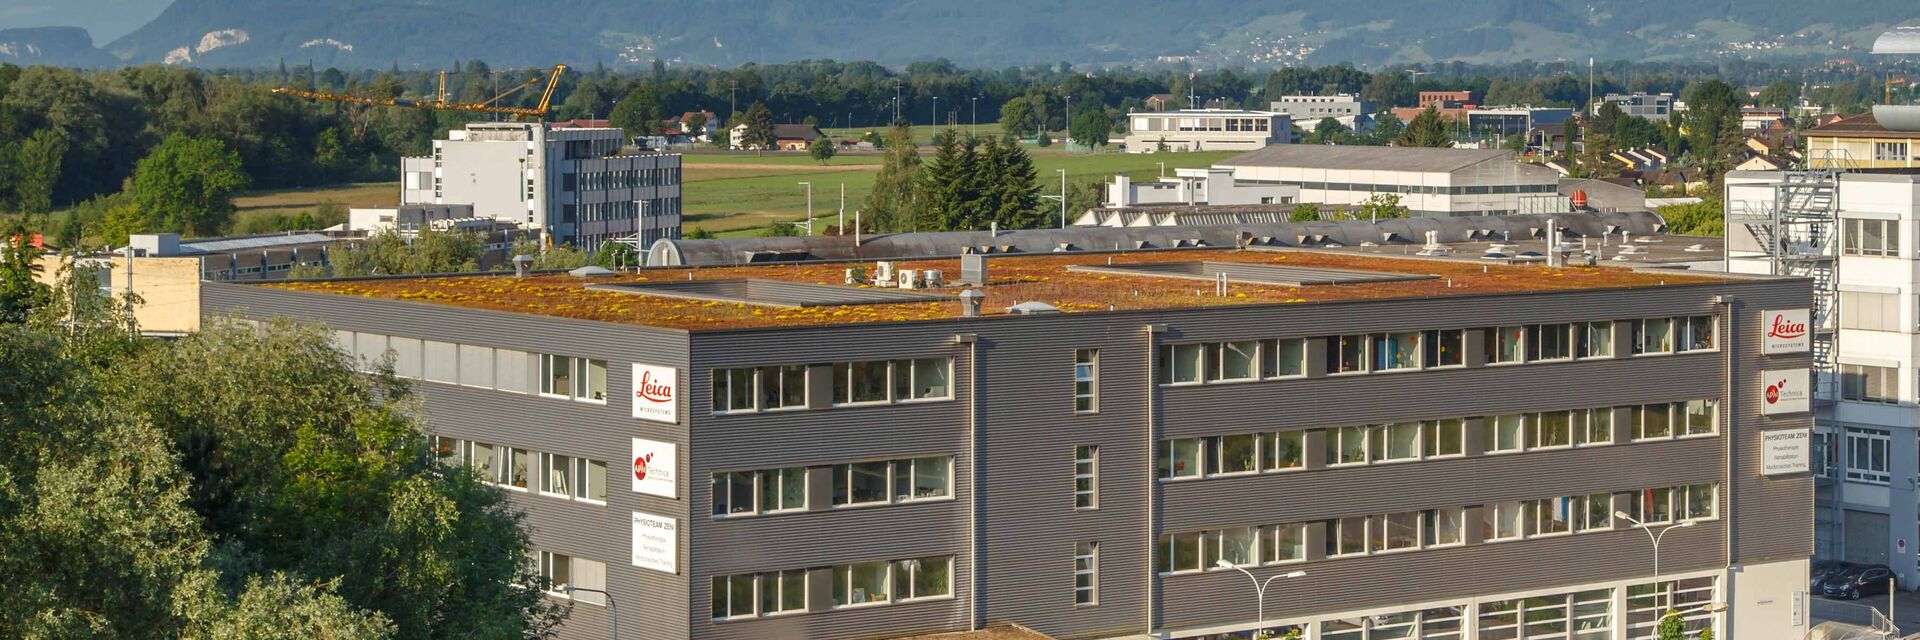 Leica Microsystems Headquarter in Heerbrugg, Schweiz